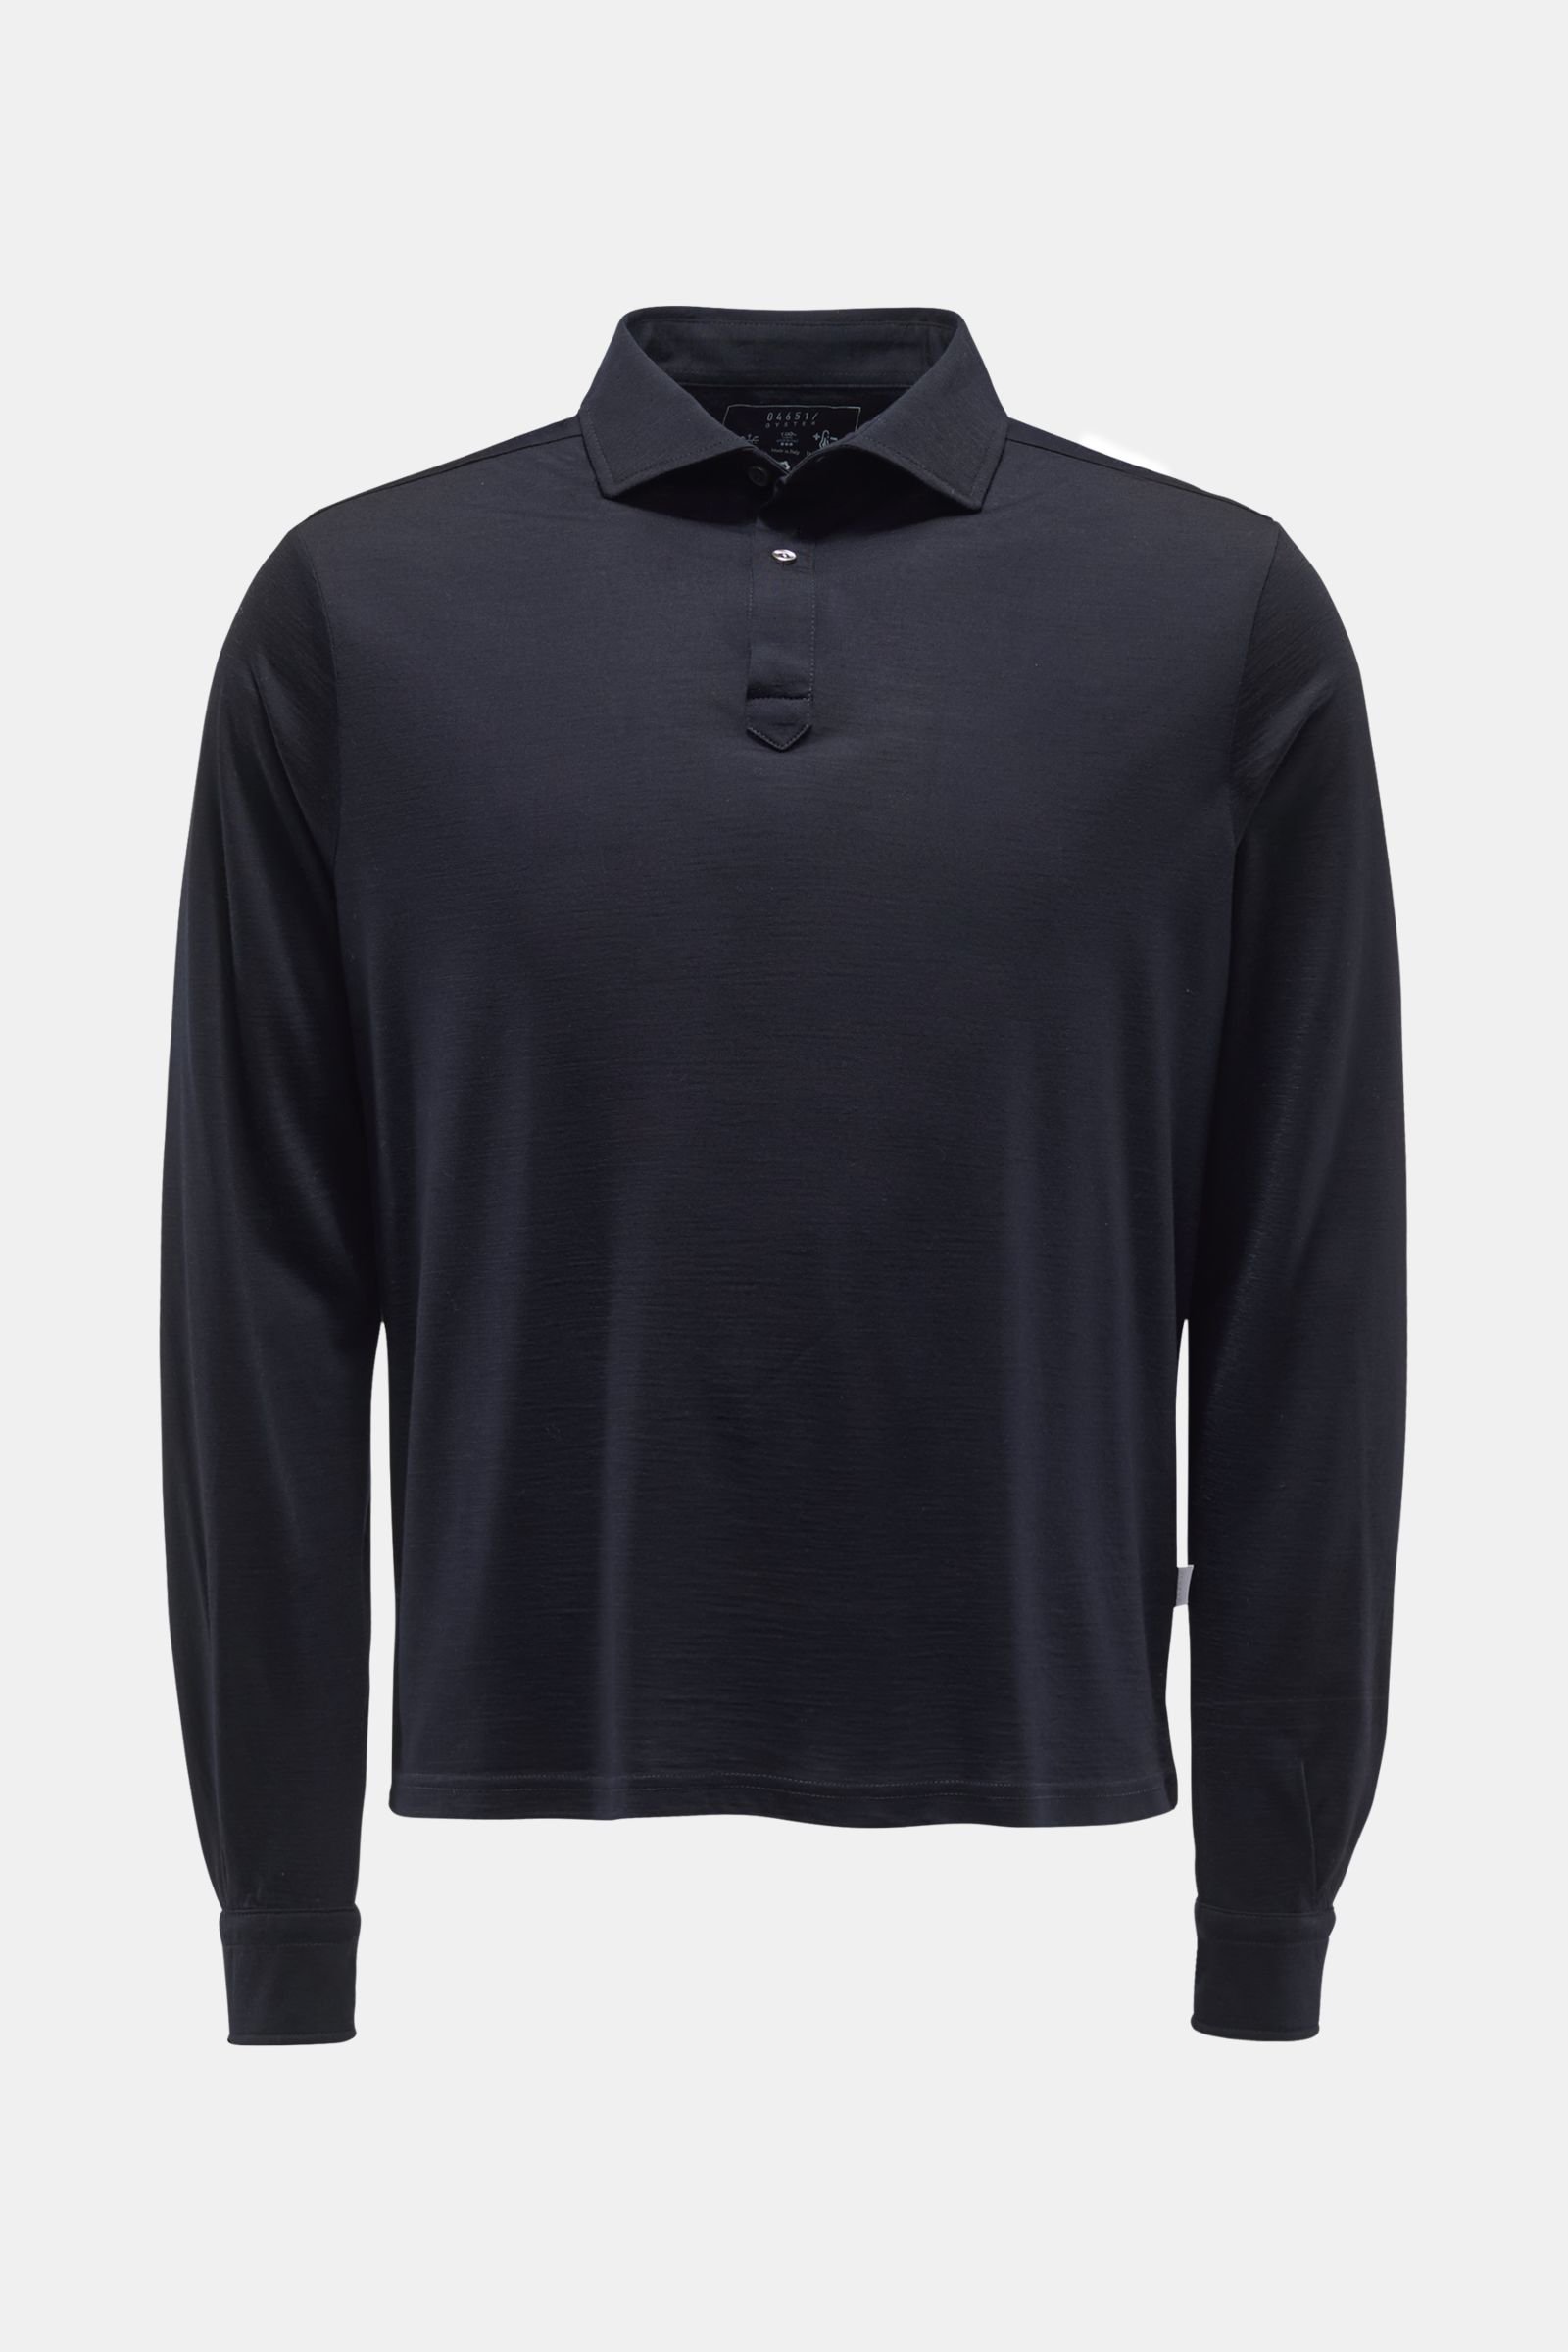 Merino long sleeve polo shirt dark navy